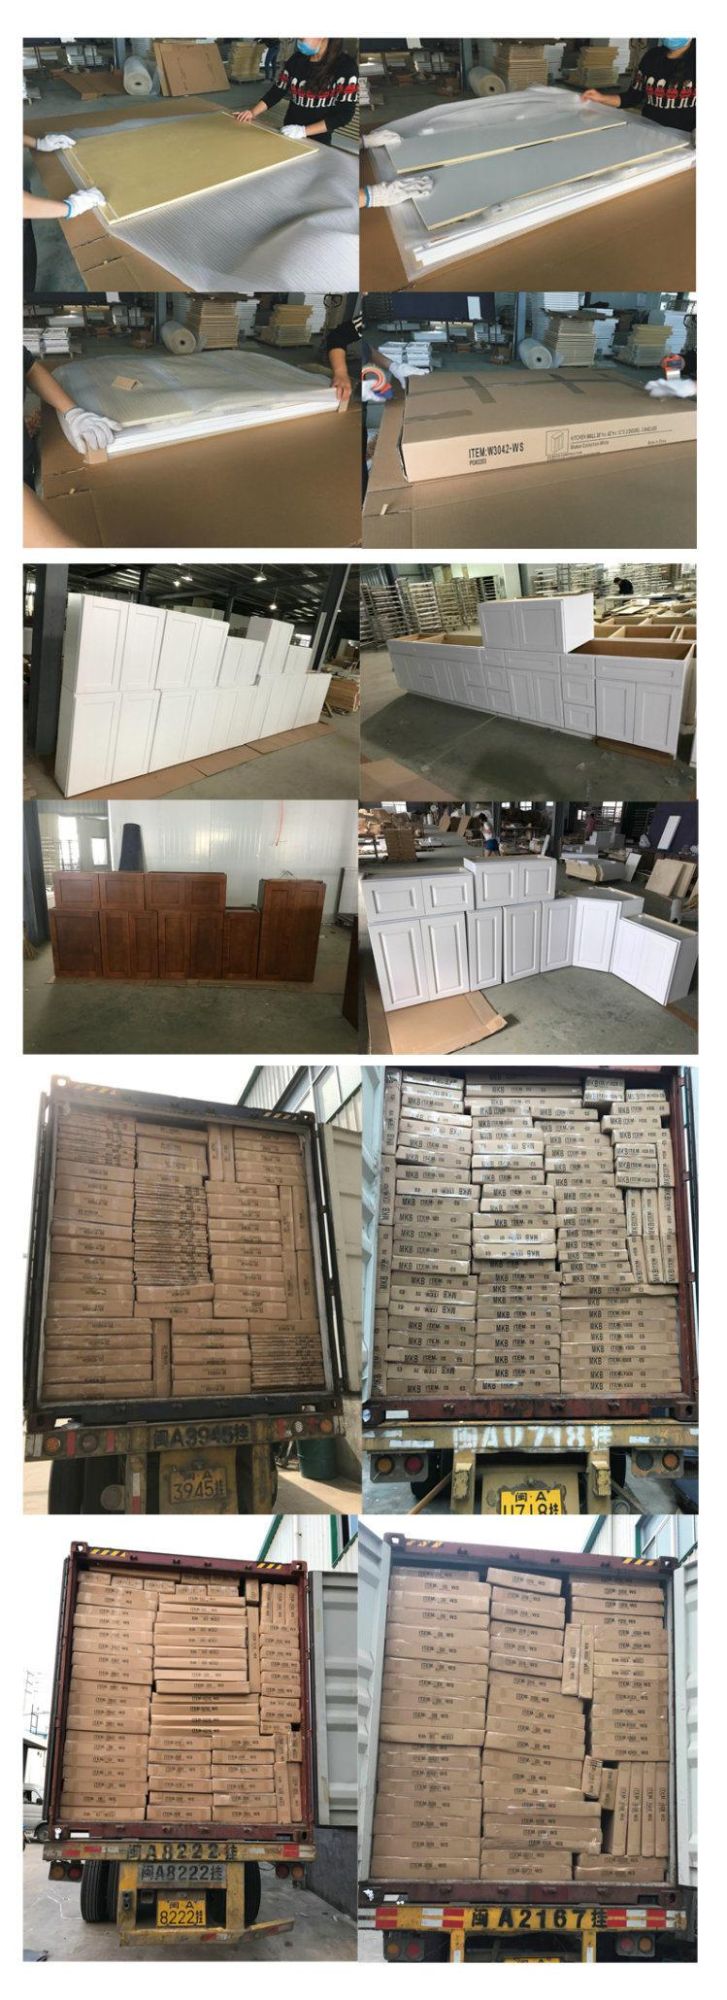 Wooden Home Furniture Online Kitchen Cabinet